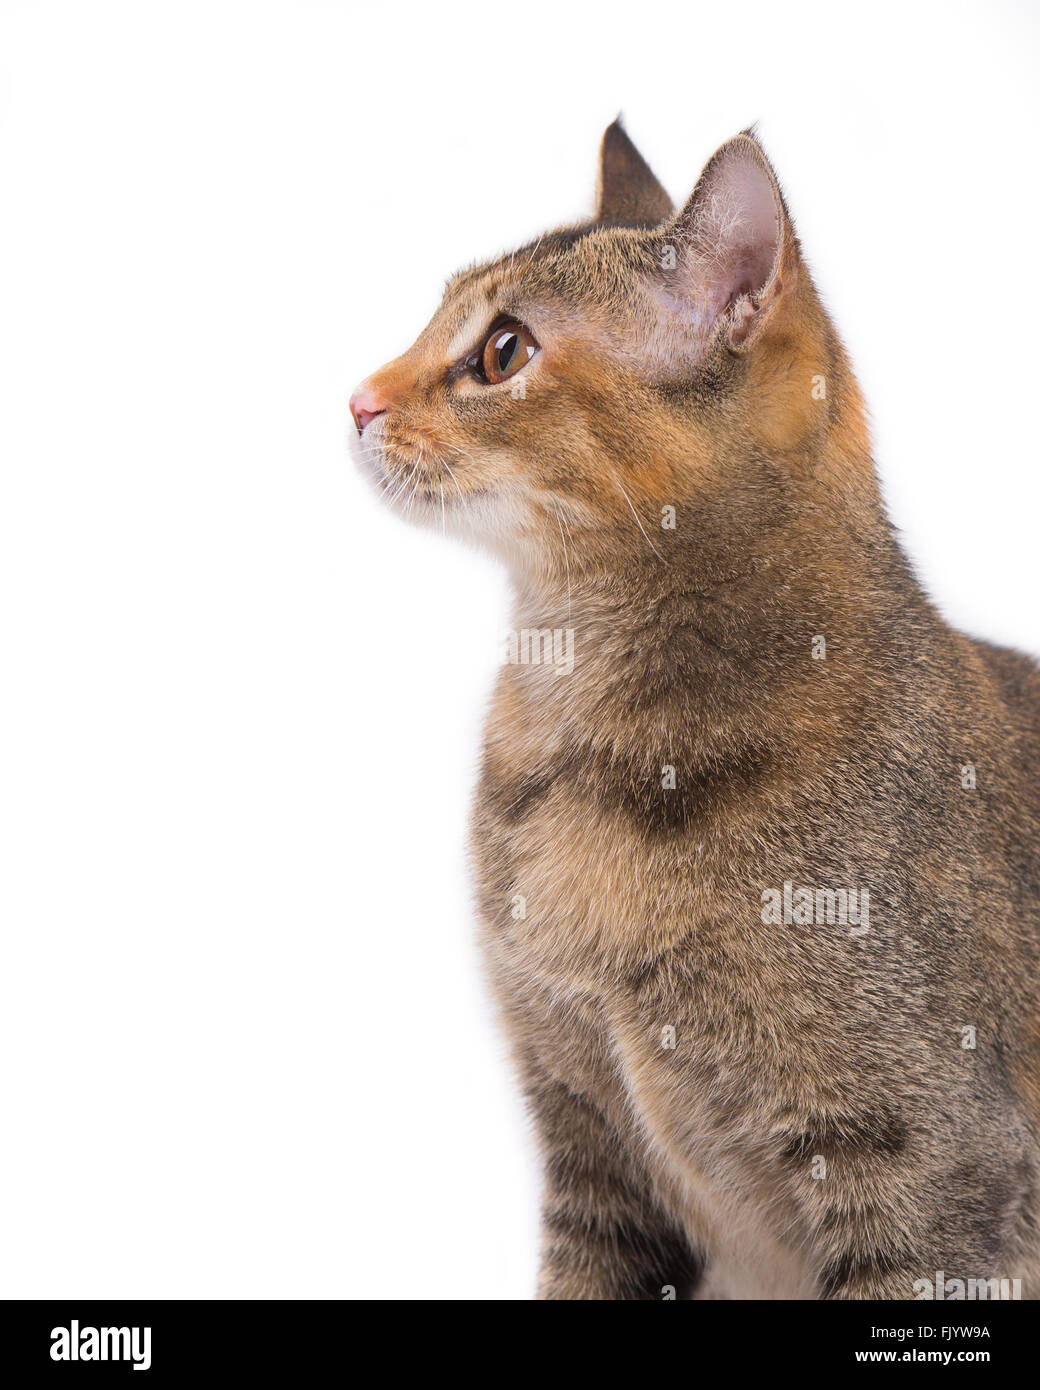 Cerrar vista de perfil de kitty cat. Foto de stock